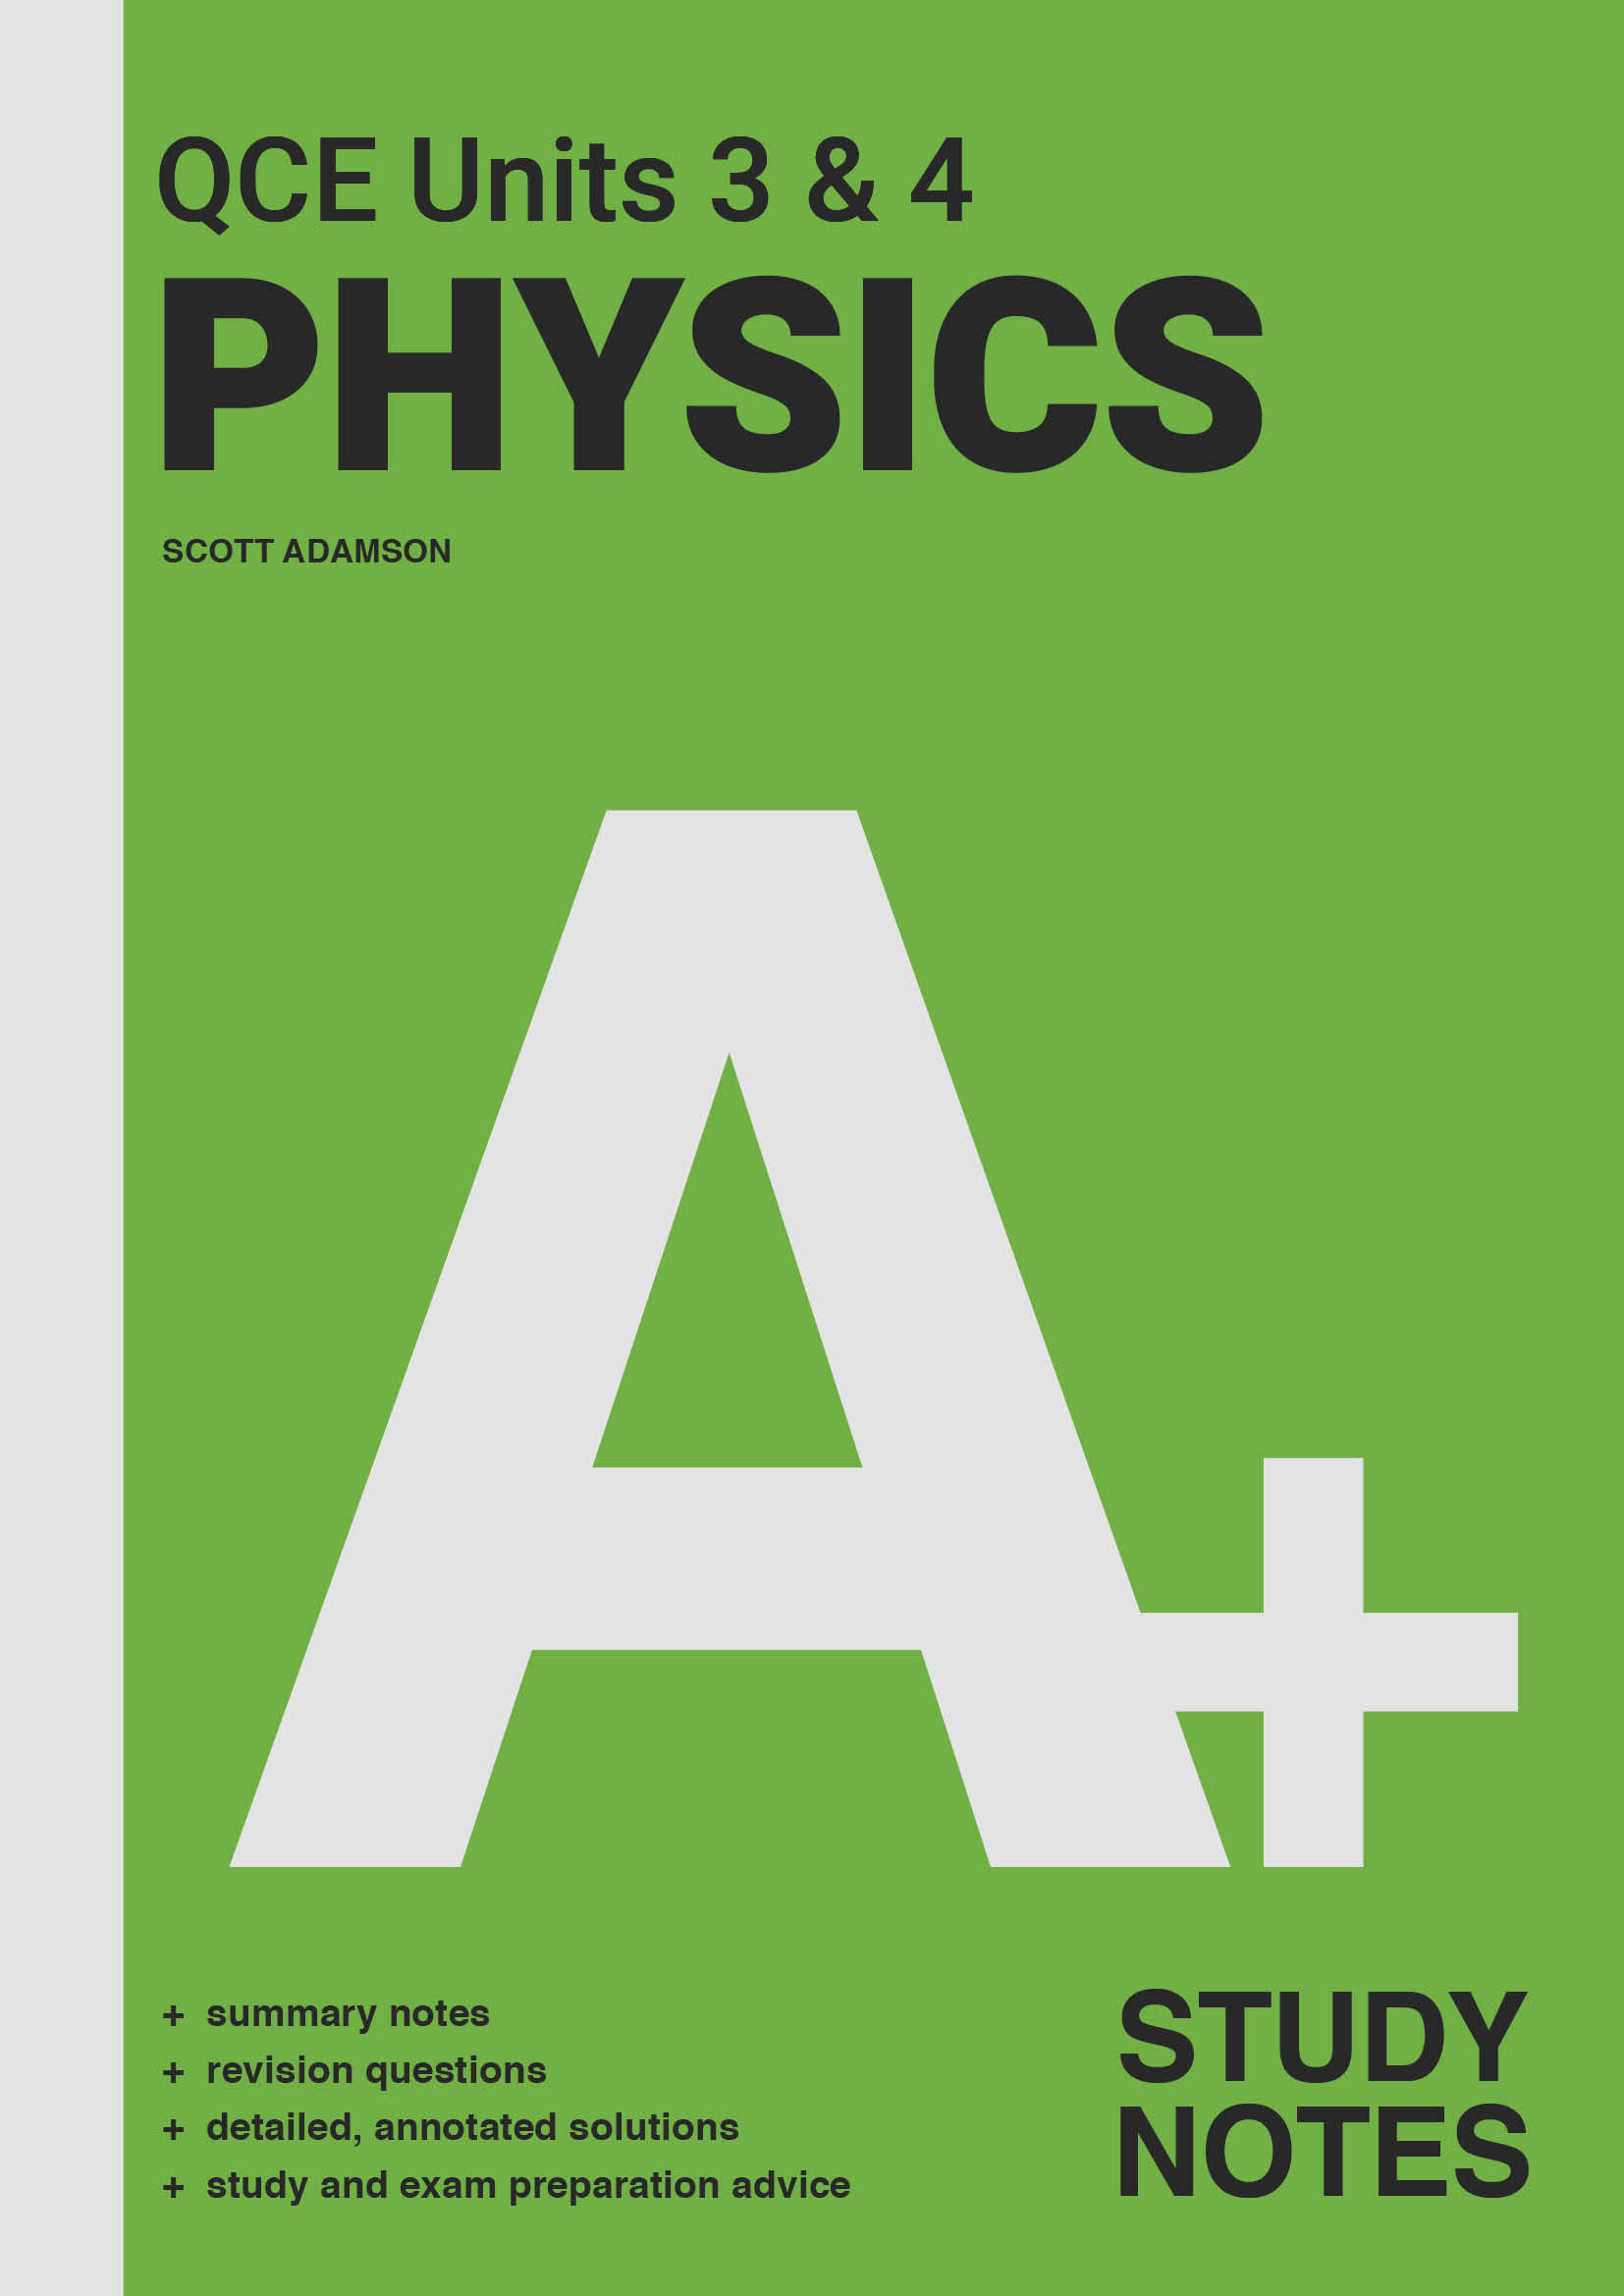 A+_QCE_physics_sn